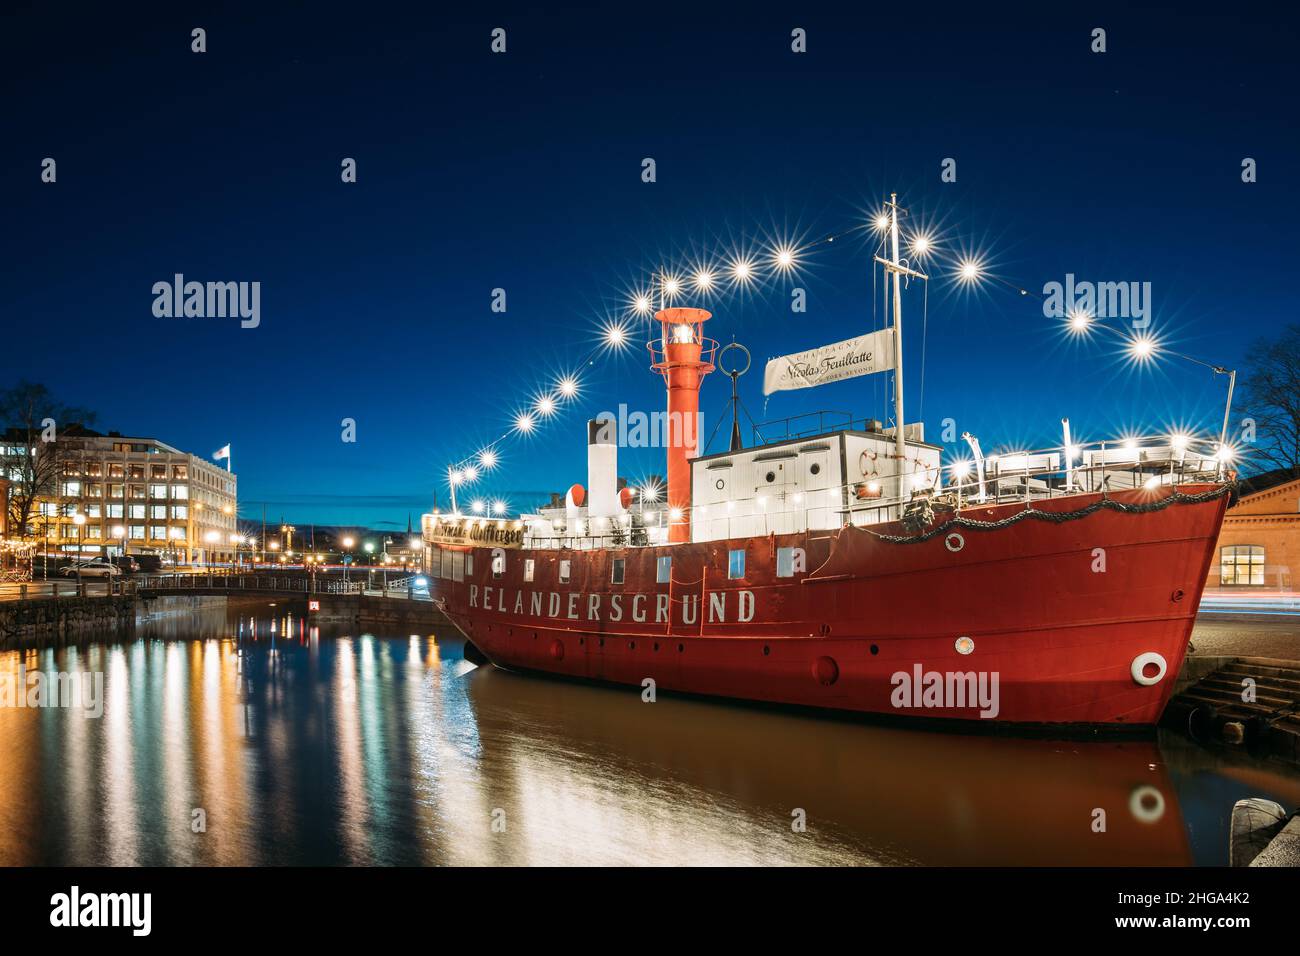 Helsinki, Finnland. Festgetäutes Steamboat Relandersgrund Restaurant Bei Abendlichen Abendbeleuchtungen. Stockfoto